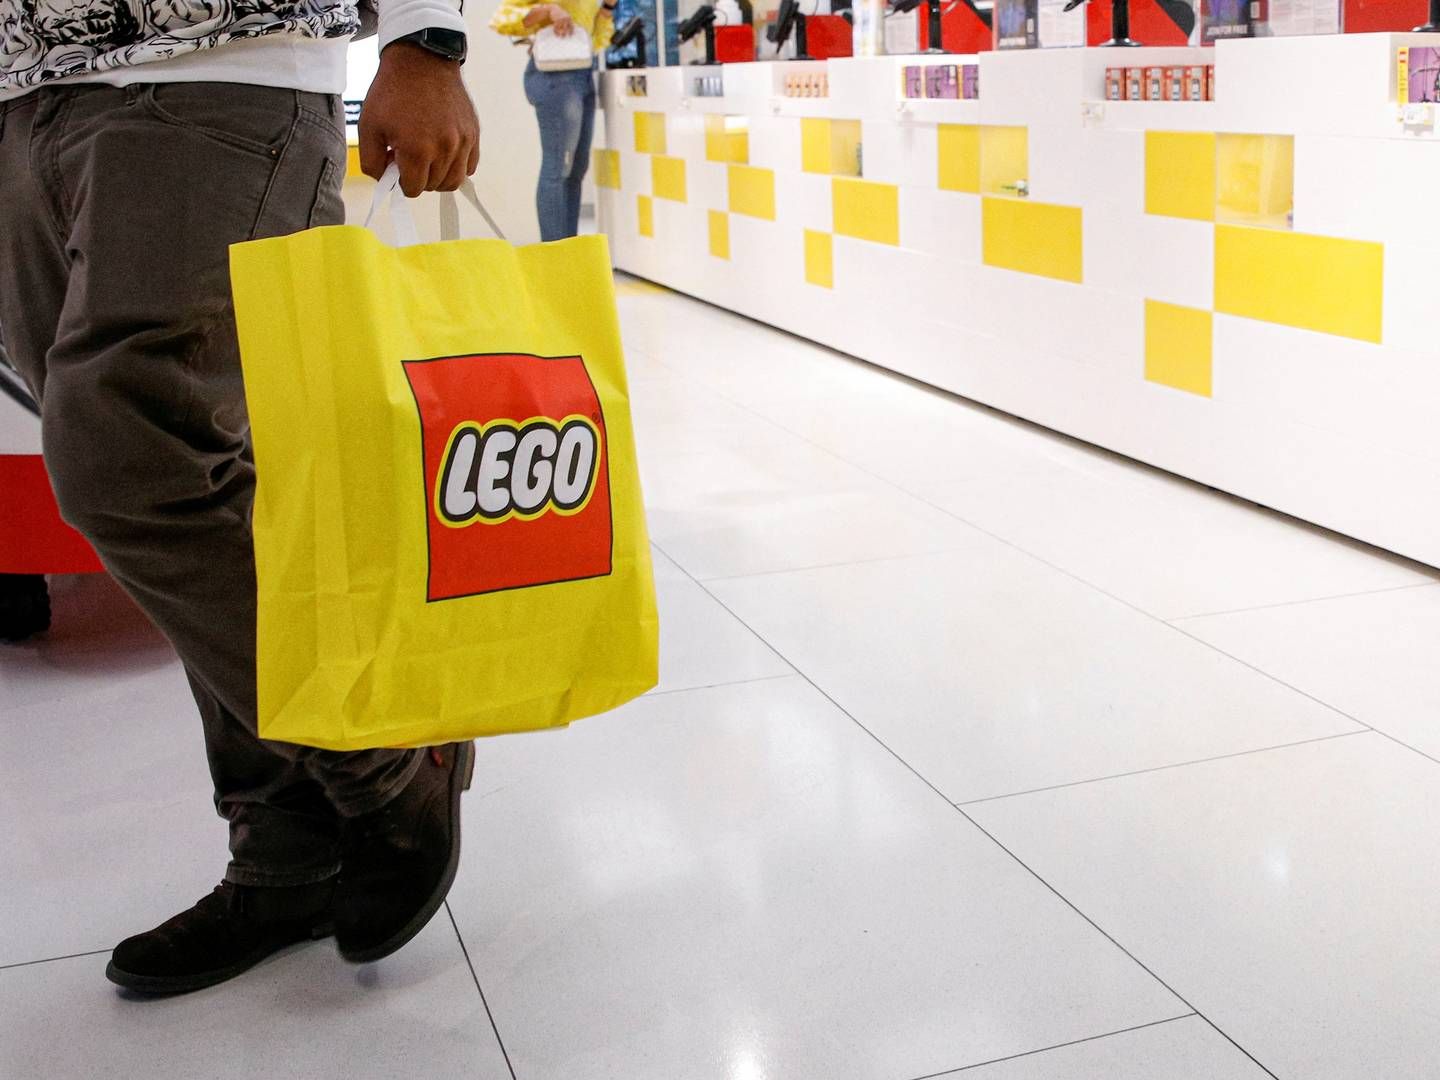 Lego vil holde ekstra øje med sine partnere i detailhandlen efter Rusland har gjort det lovligt at importere legoklodser uden legetøjskoncernens tilladelse. | Foto: BRENDAN MCDERMID/REUTERS / X90143